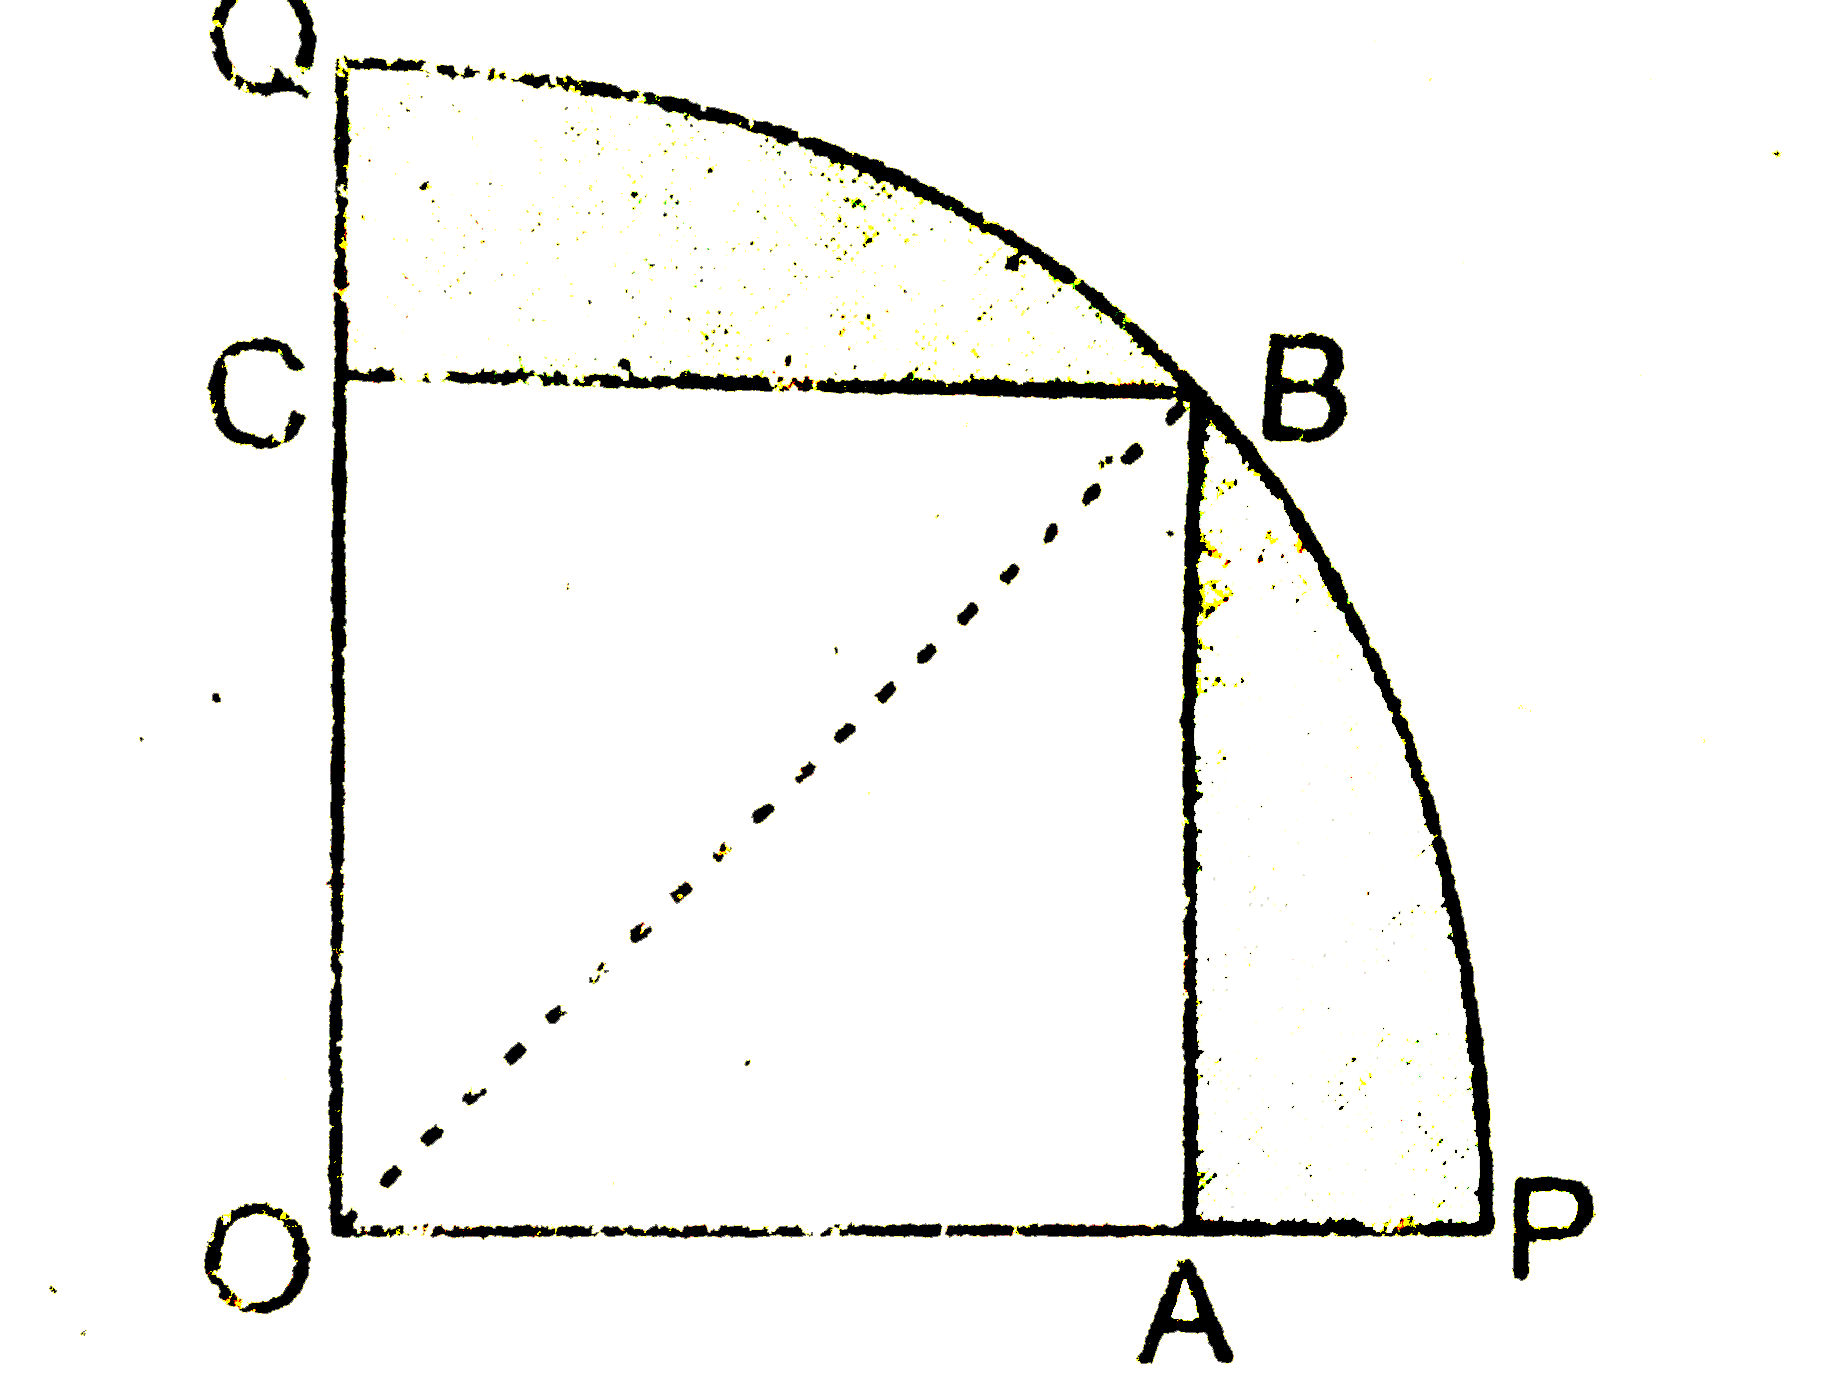 आकृति  में  , एक  चतुर्थाश OPBQ  के अन्तर्गन  एक वर्ग  OABC  बना  हुआ है  यदि  OA =20  सेमी  है , तो  छायांकित  भाग  का क्षेत्रफल  ज्ञात  कीजिए  । (pi =3.14लीजिए)|